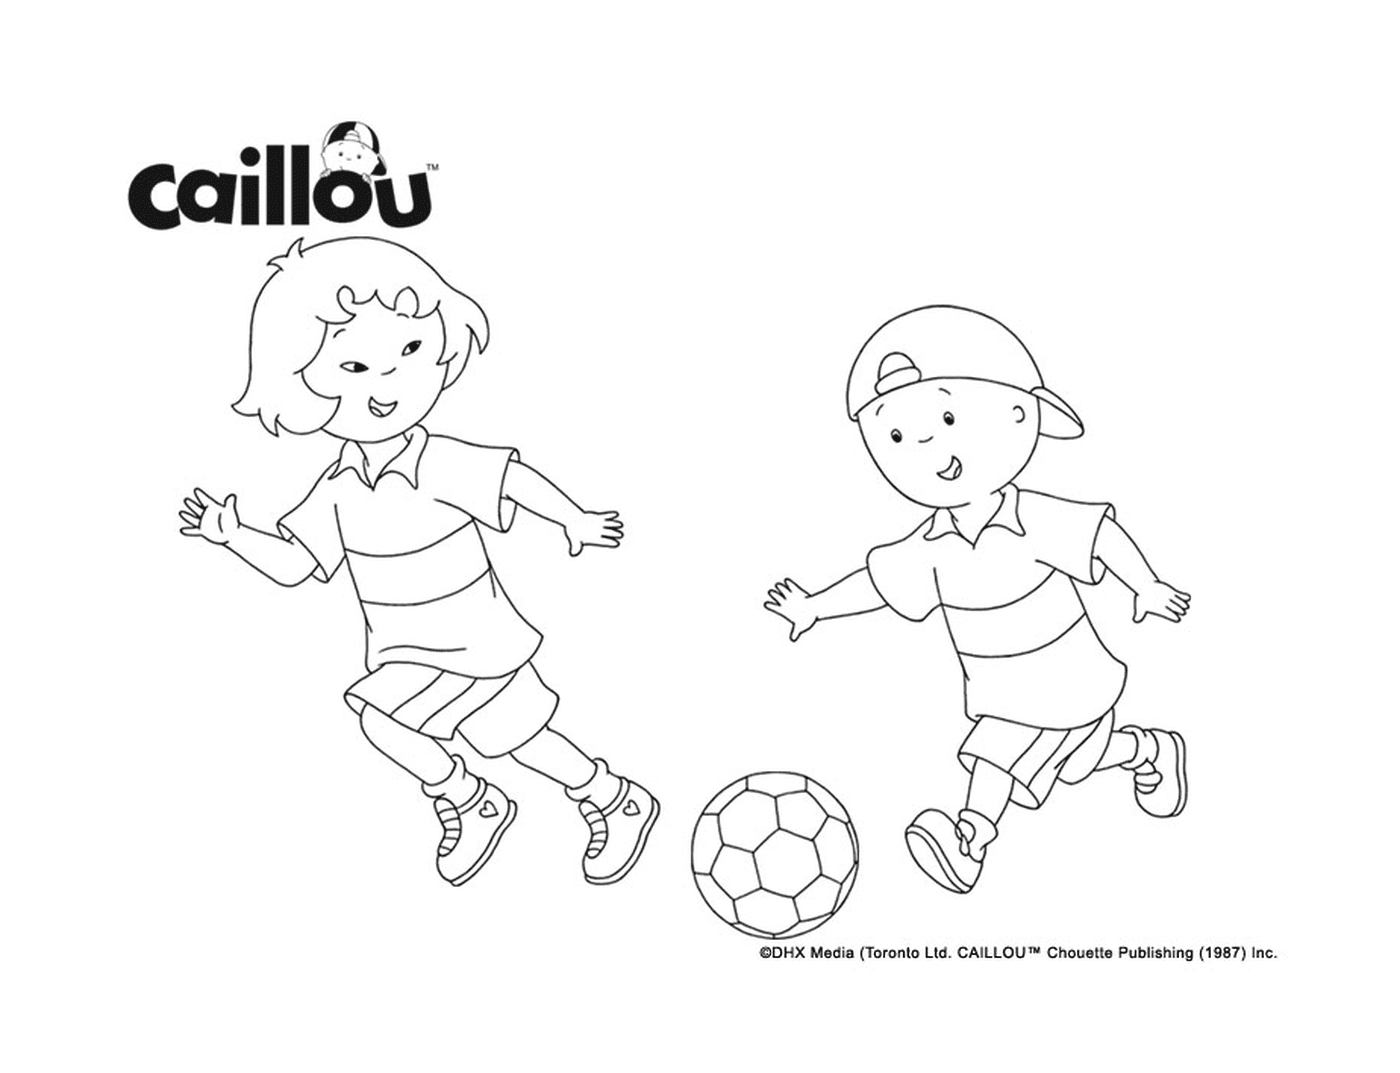  Caillou e Sarah giocano a calcio per prepararsi alla Coppa del Mondo FIFA 